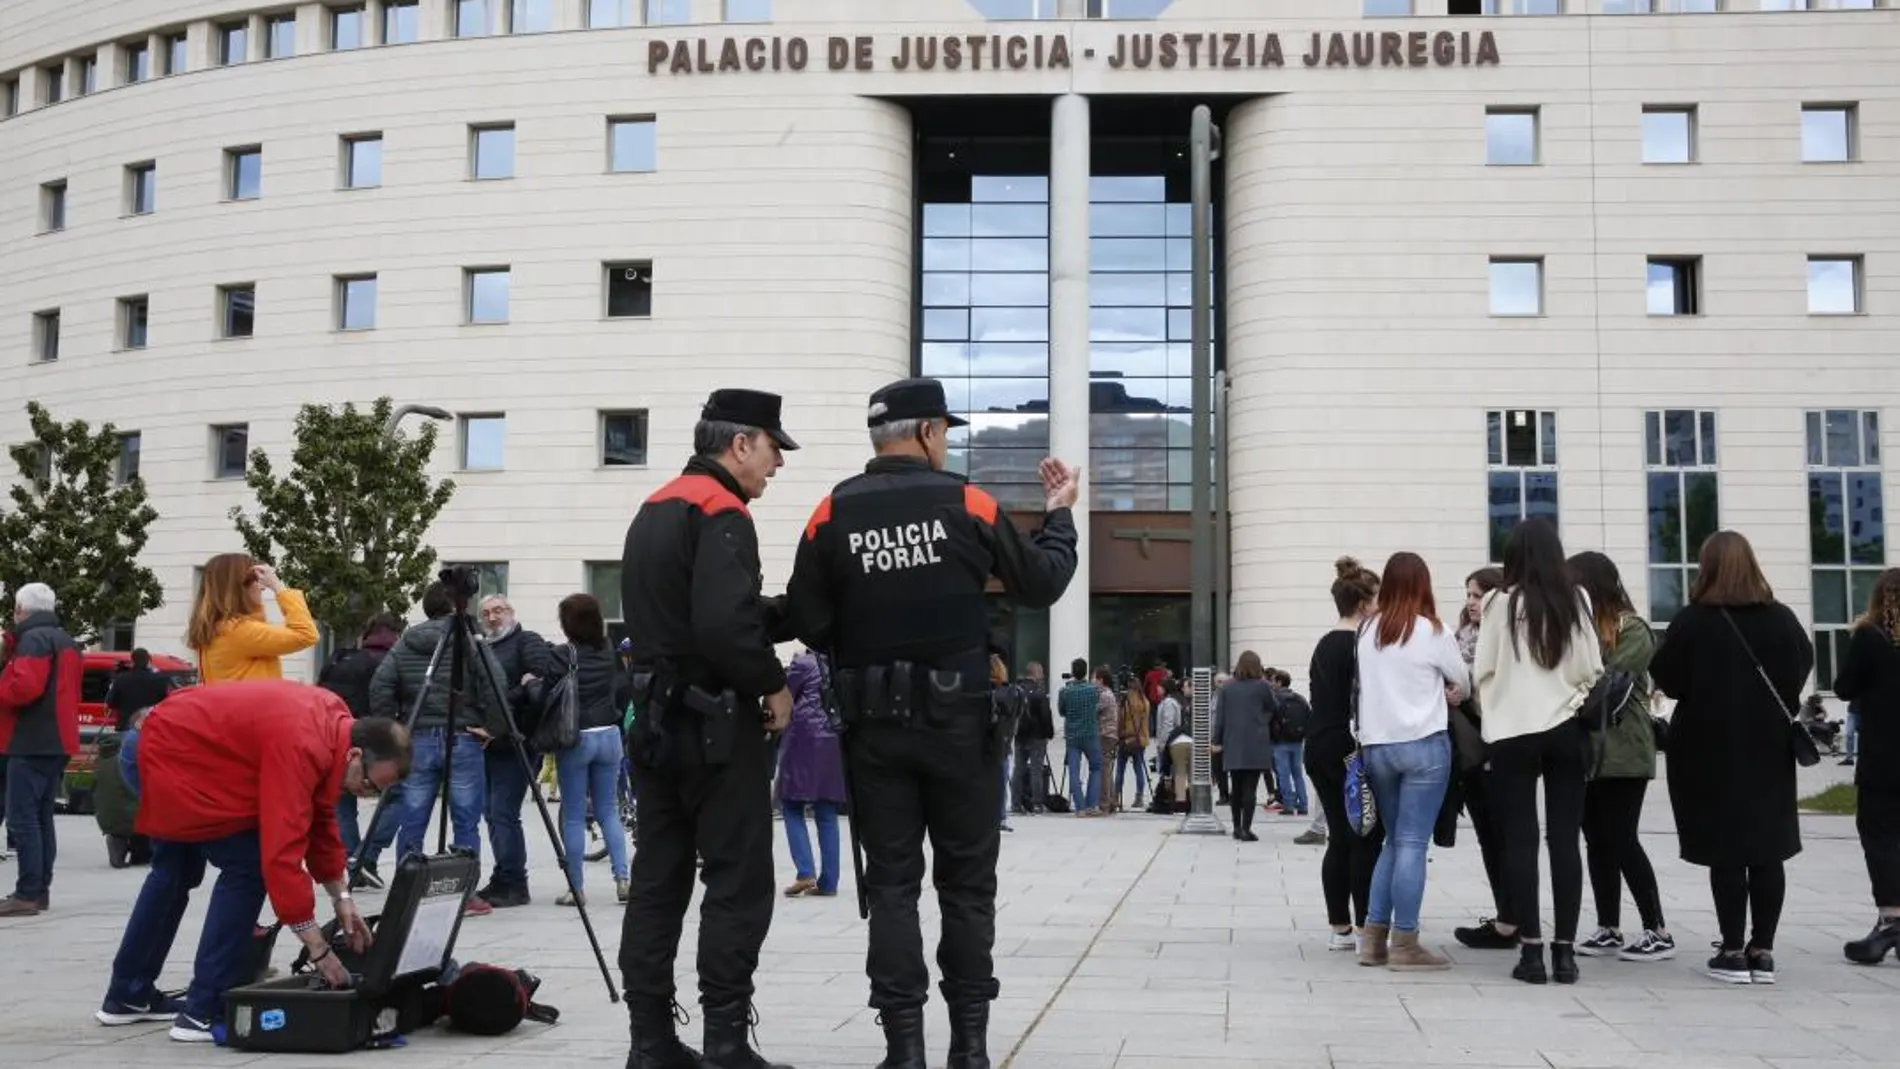 Numerosos medios de comunicación en el exterior del Palacio de Justicia de Navarra